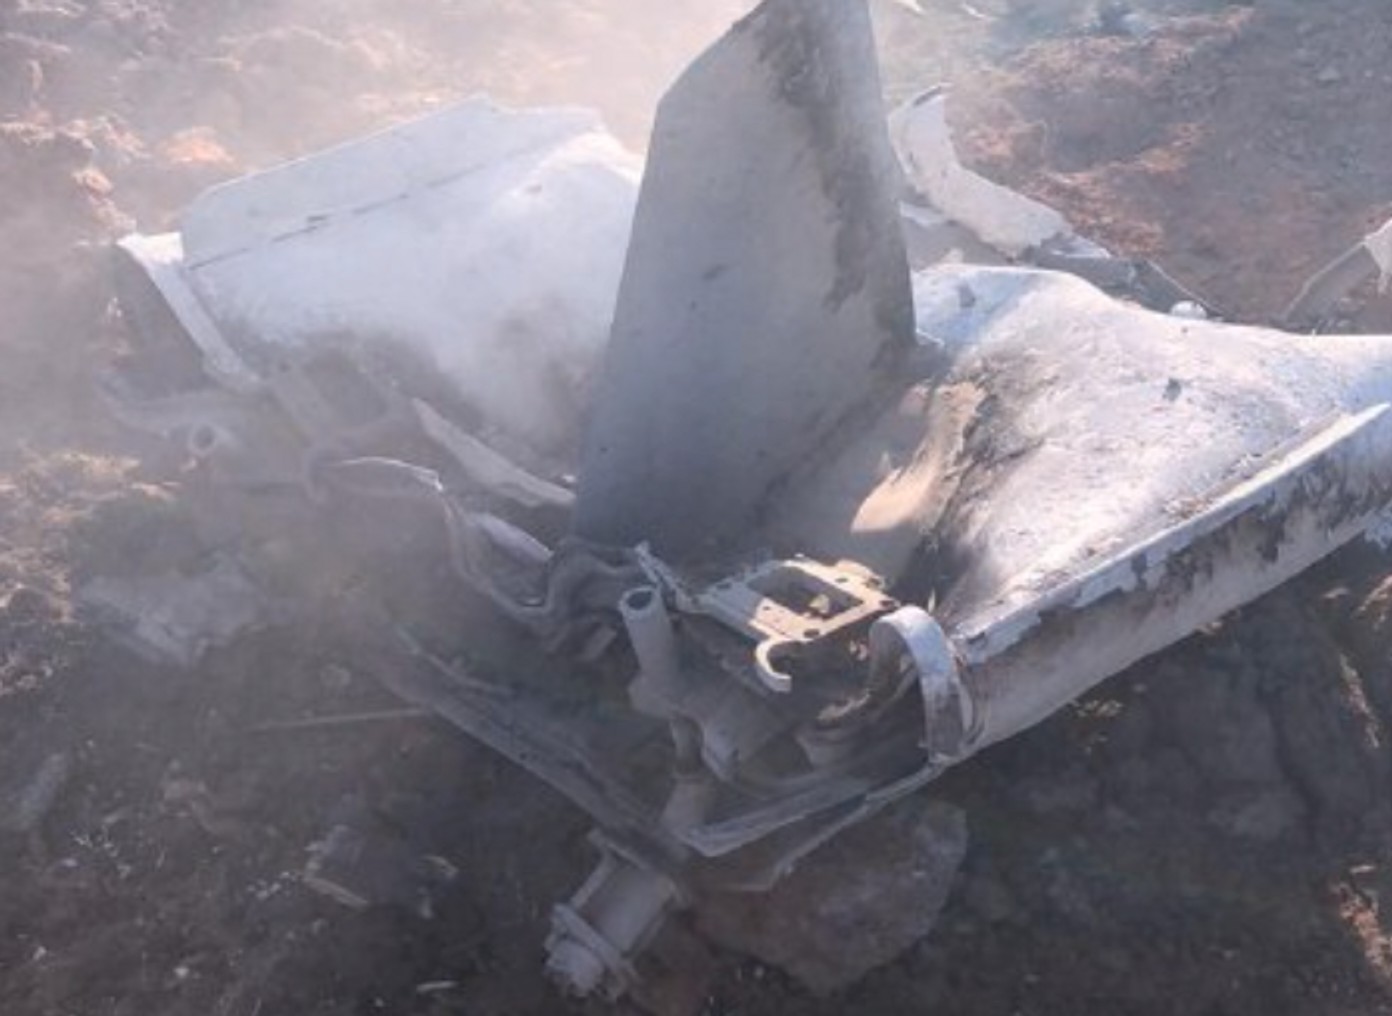 Губернатор Ставропольского края сообщил о падении «неизвестного летательного аппарата». Это был беспилотник